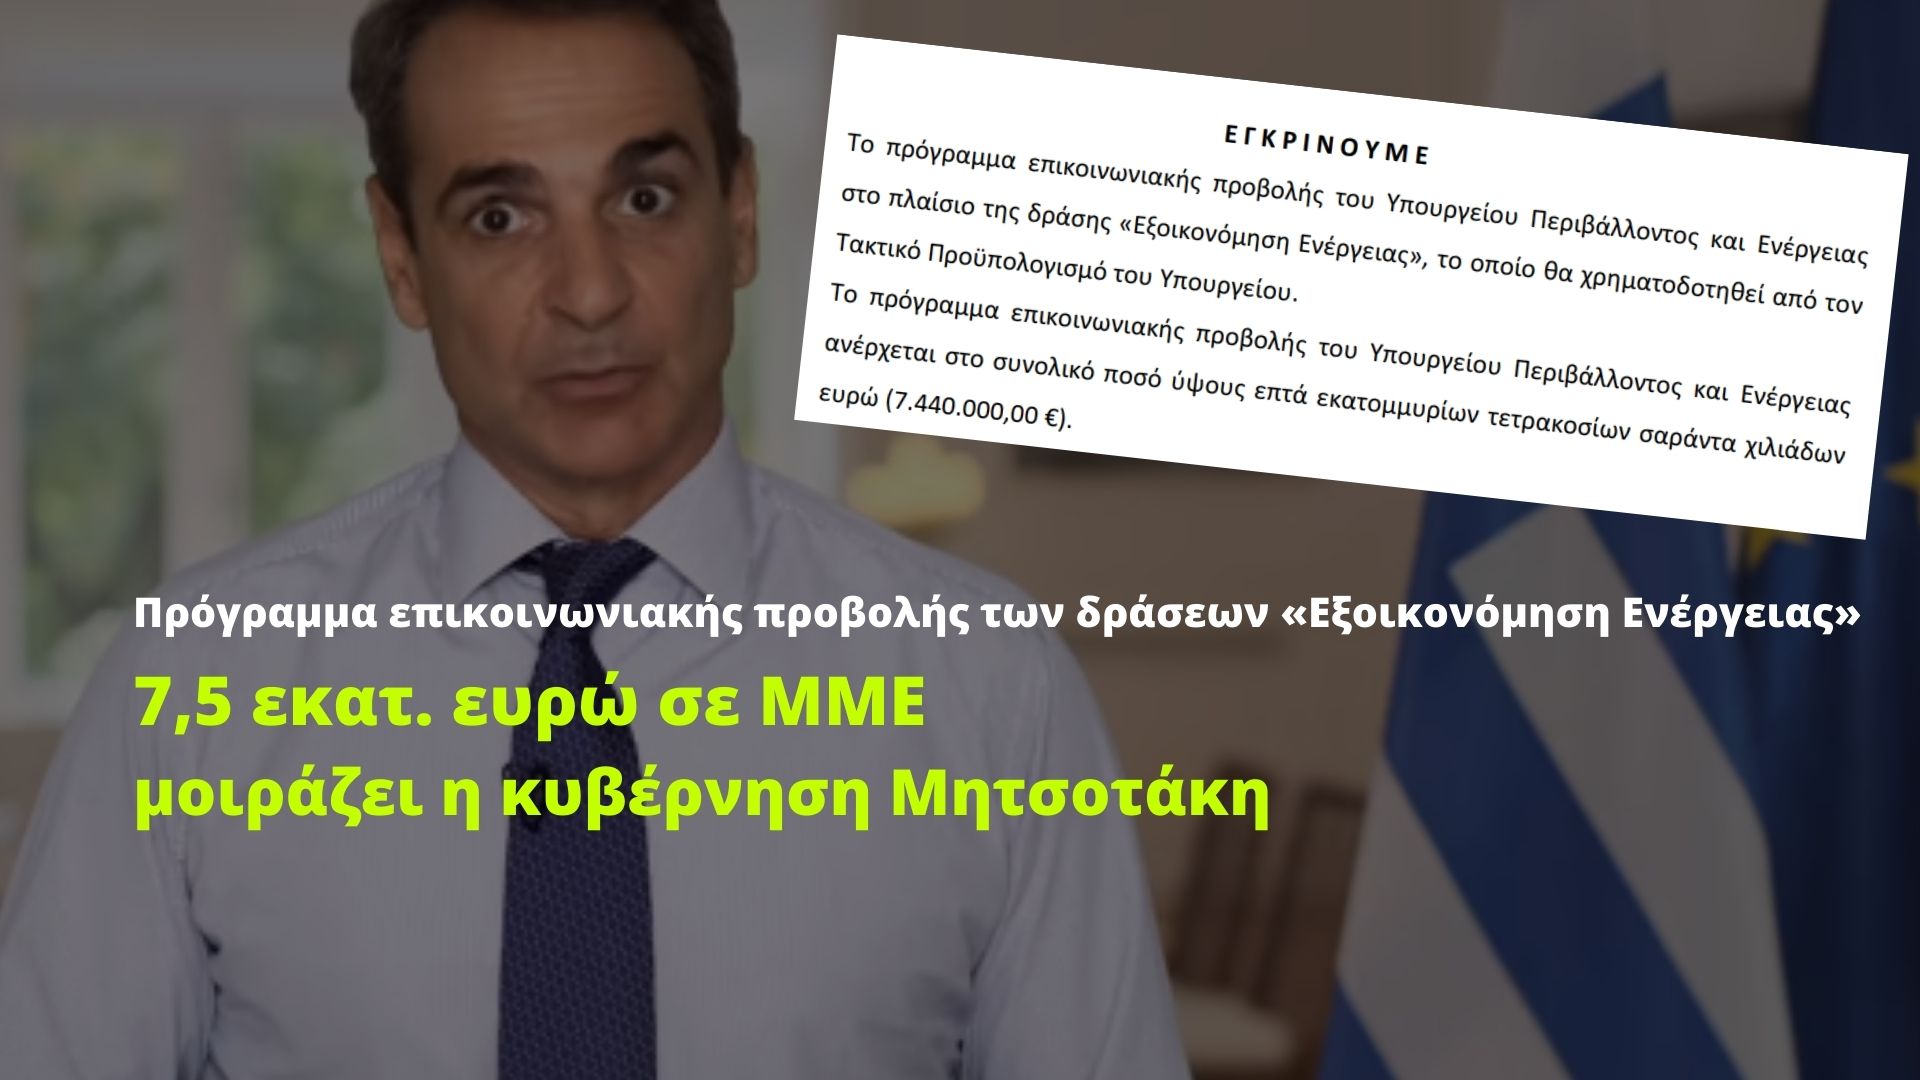 (Ακόμη) 7,5 εκατ. ευρώ σε ΜΜΕ μοιράζει η κυβέρνηση Μητσοτάκη